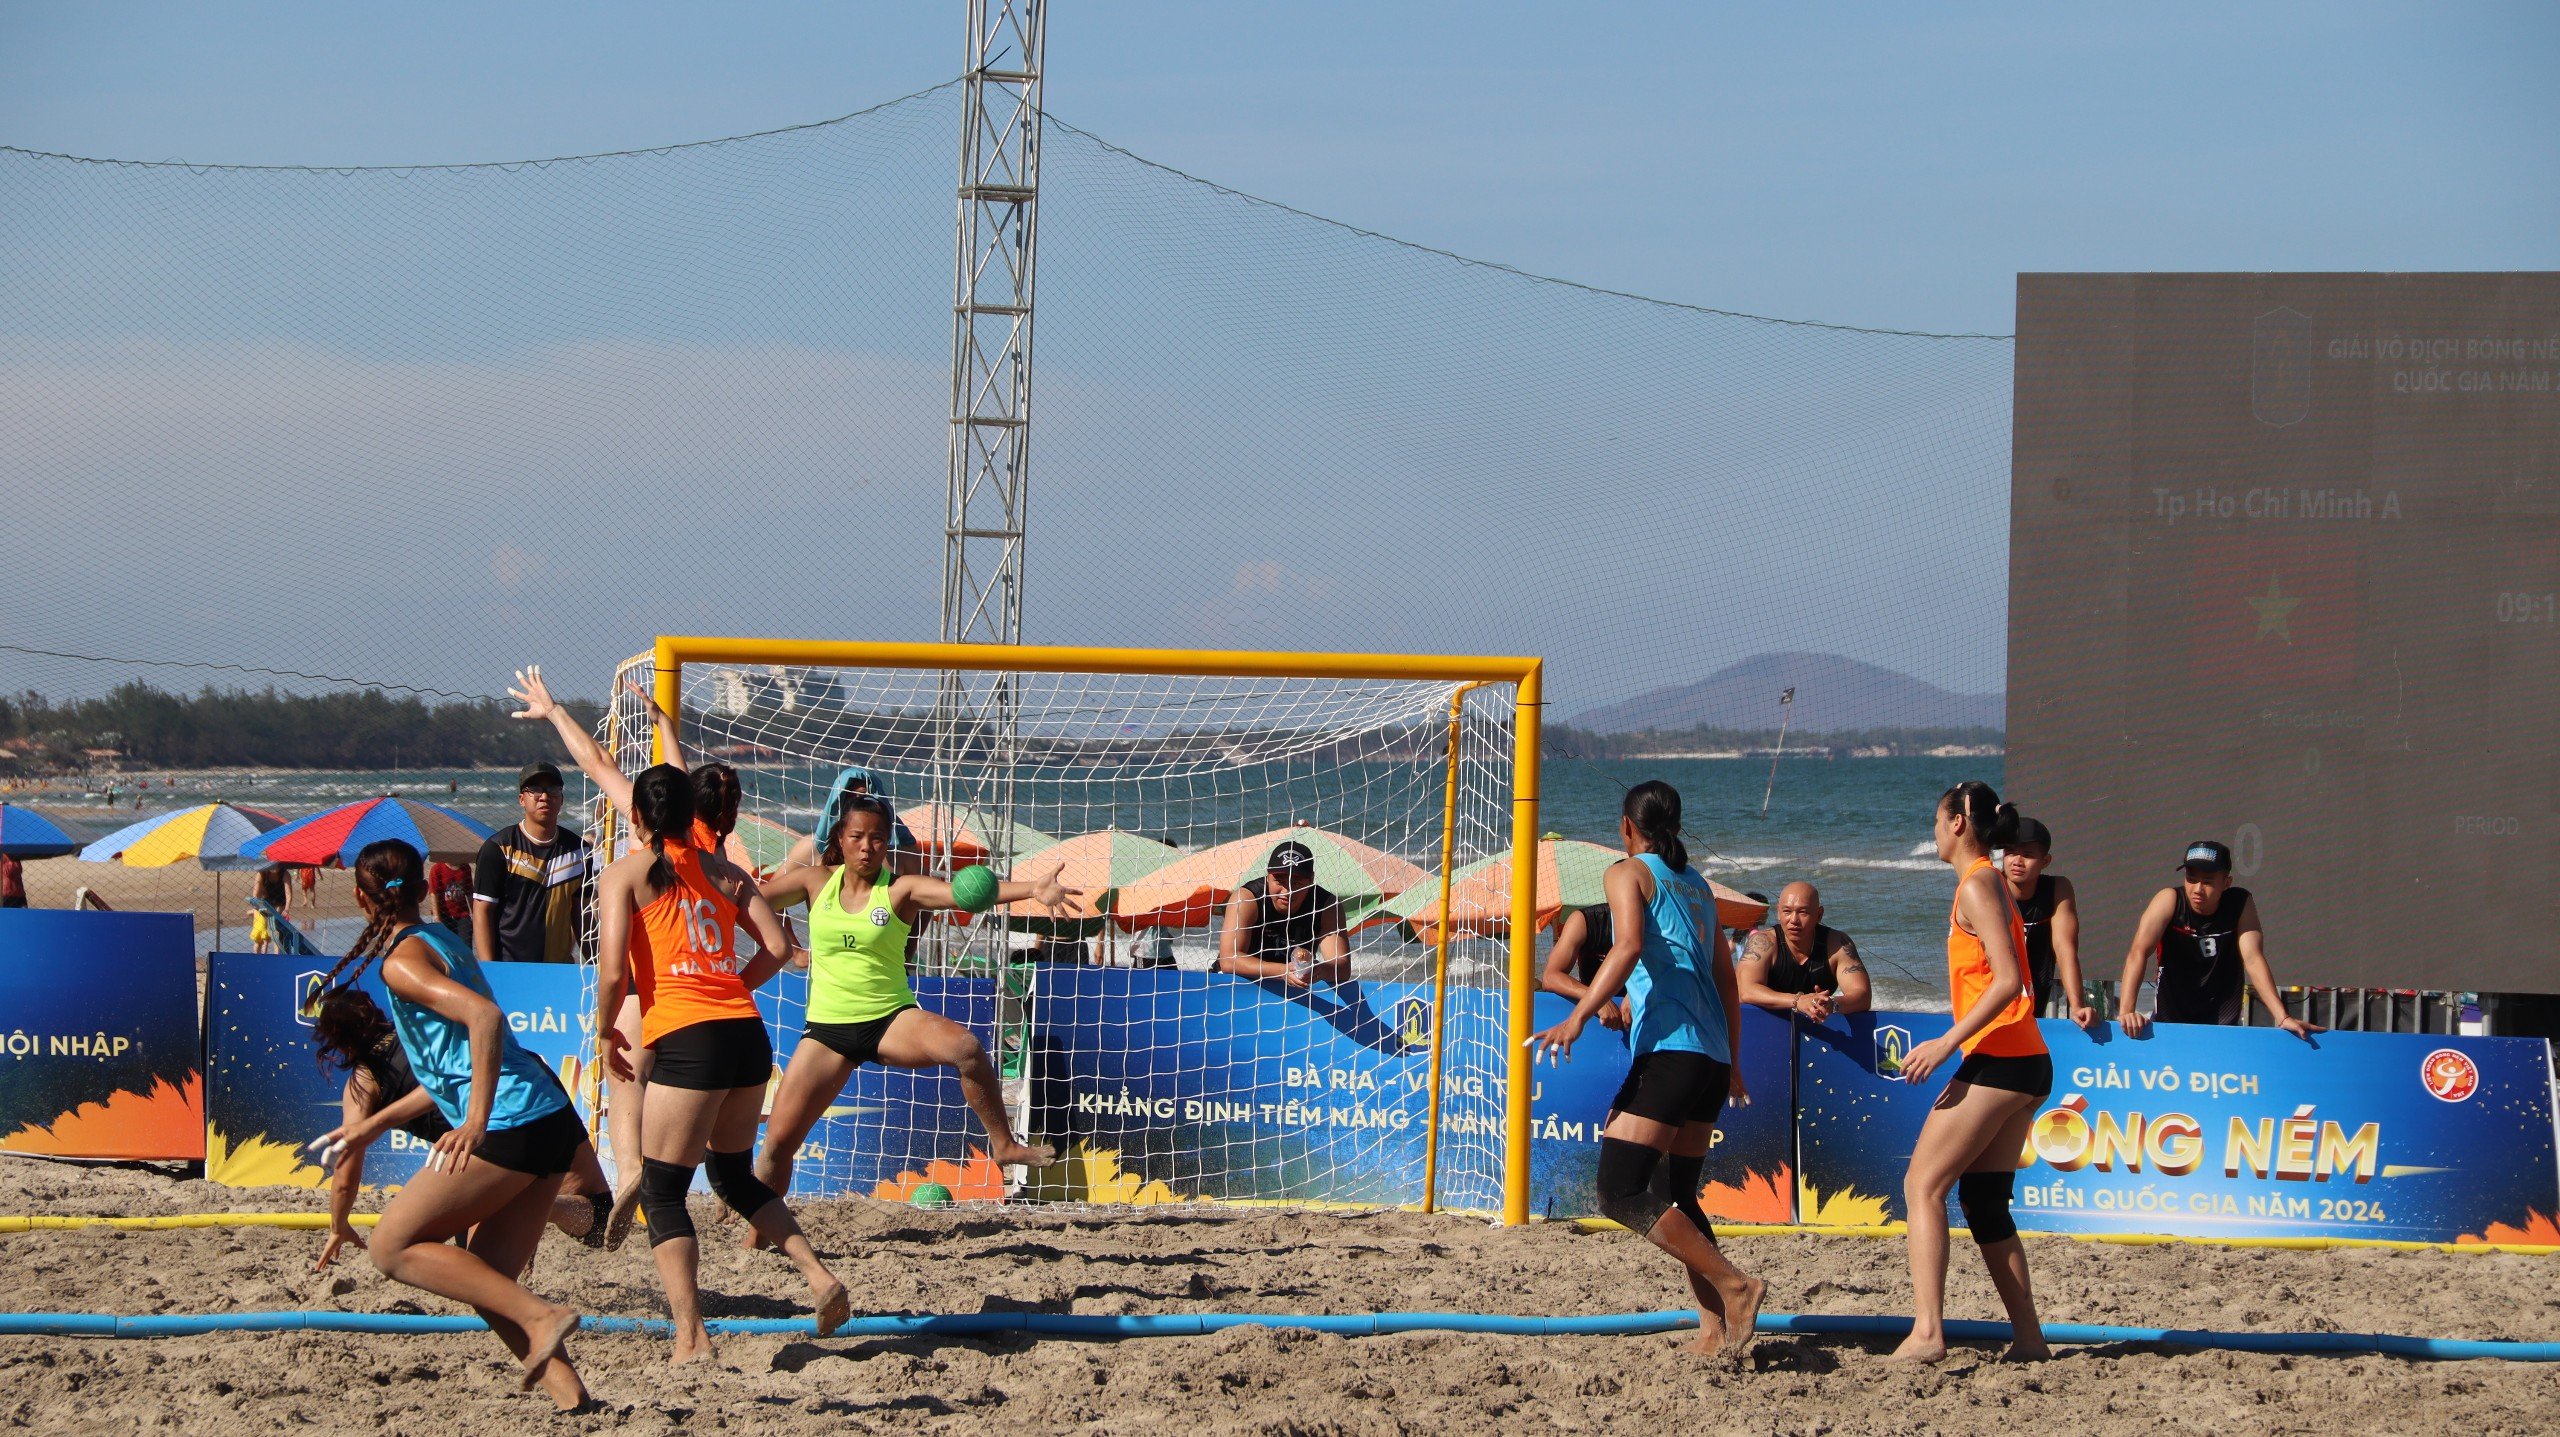 Các VĐV nữ thi đấu tại trận chung kết giải bóng ném bãi biển quốc gia.